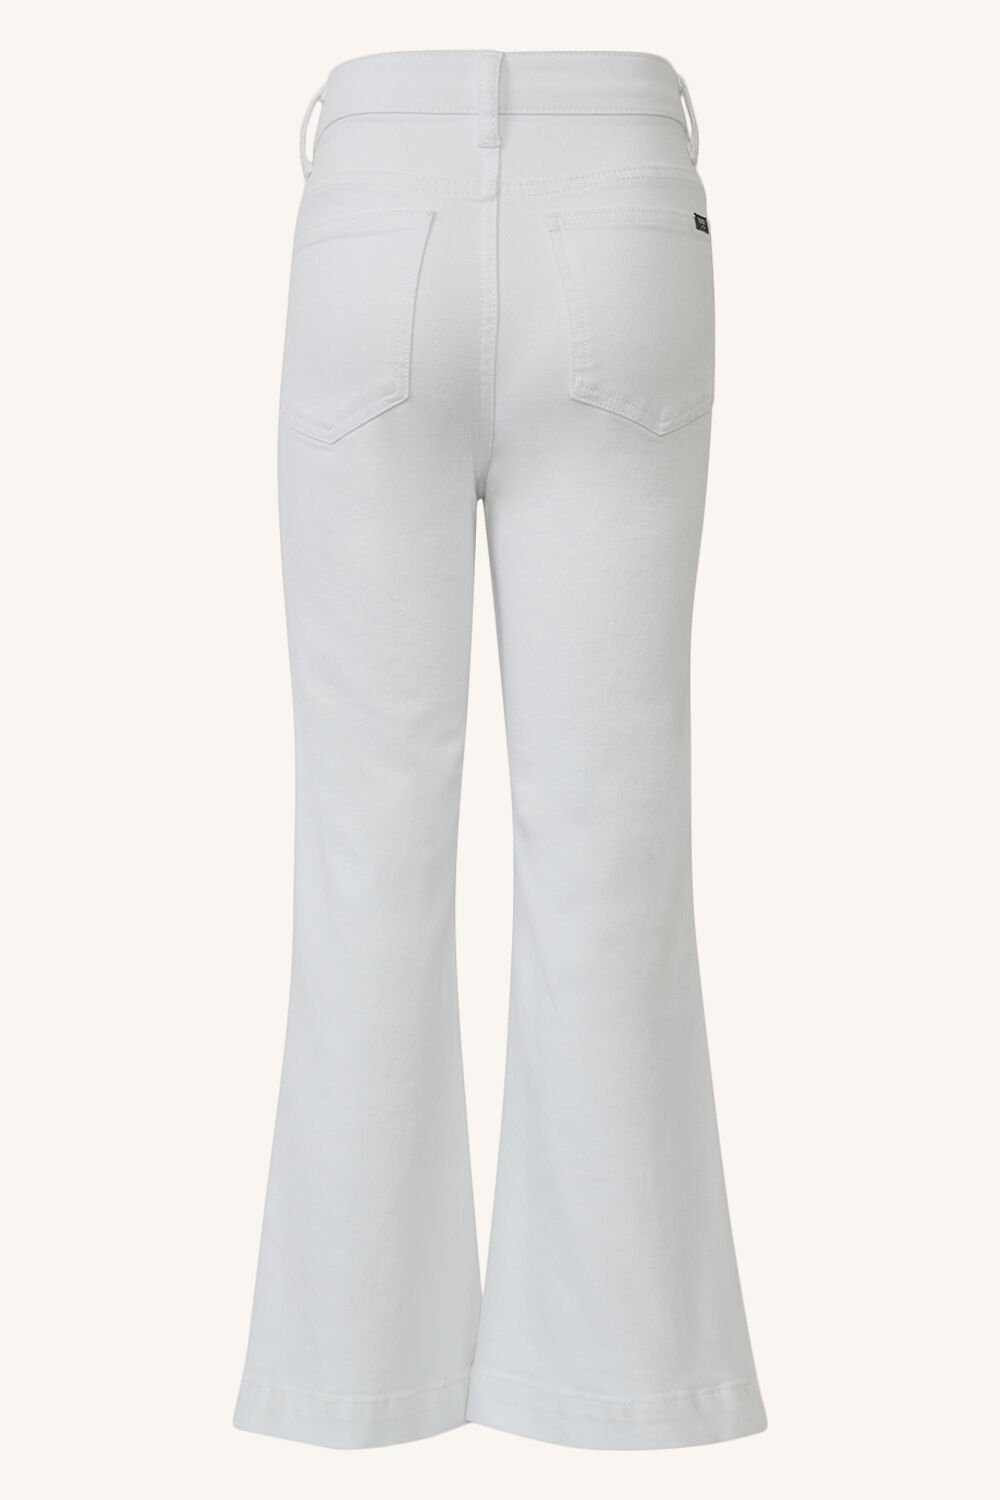 MINI KLUB Regular Baby Girls White Jeans  Buy MINI KLUB Regular Baby Girls  White Jeans Online at Best Prices in India  Flipkartcom